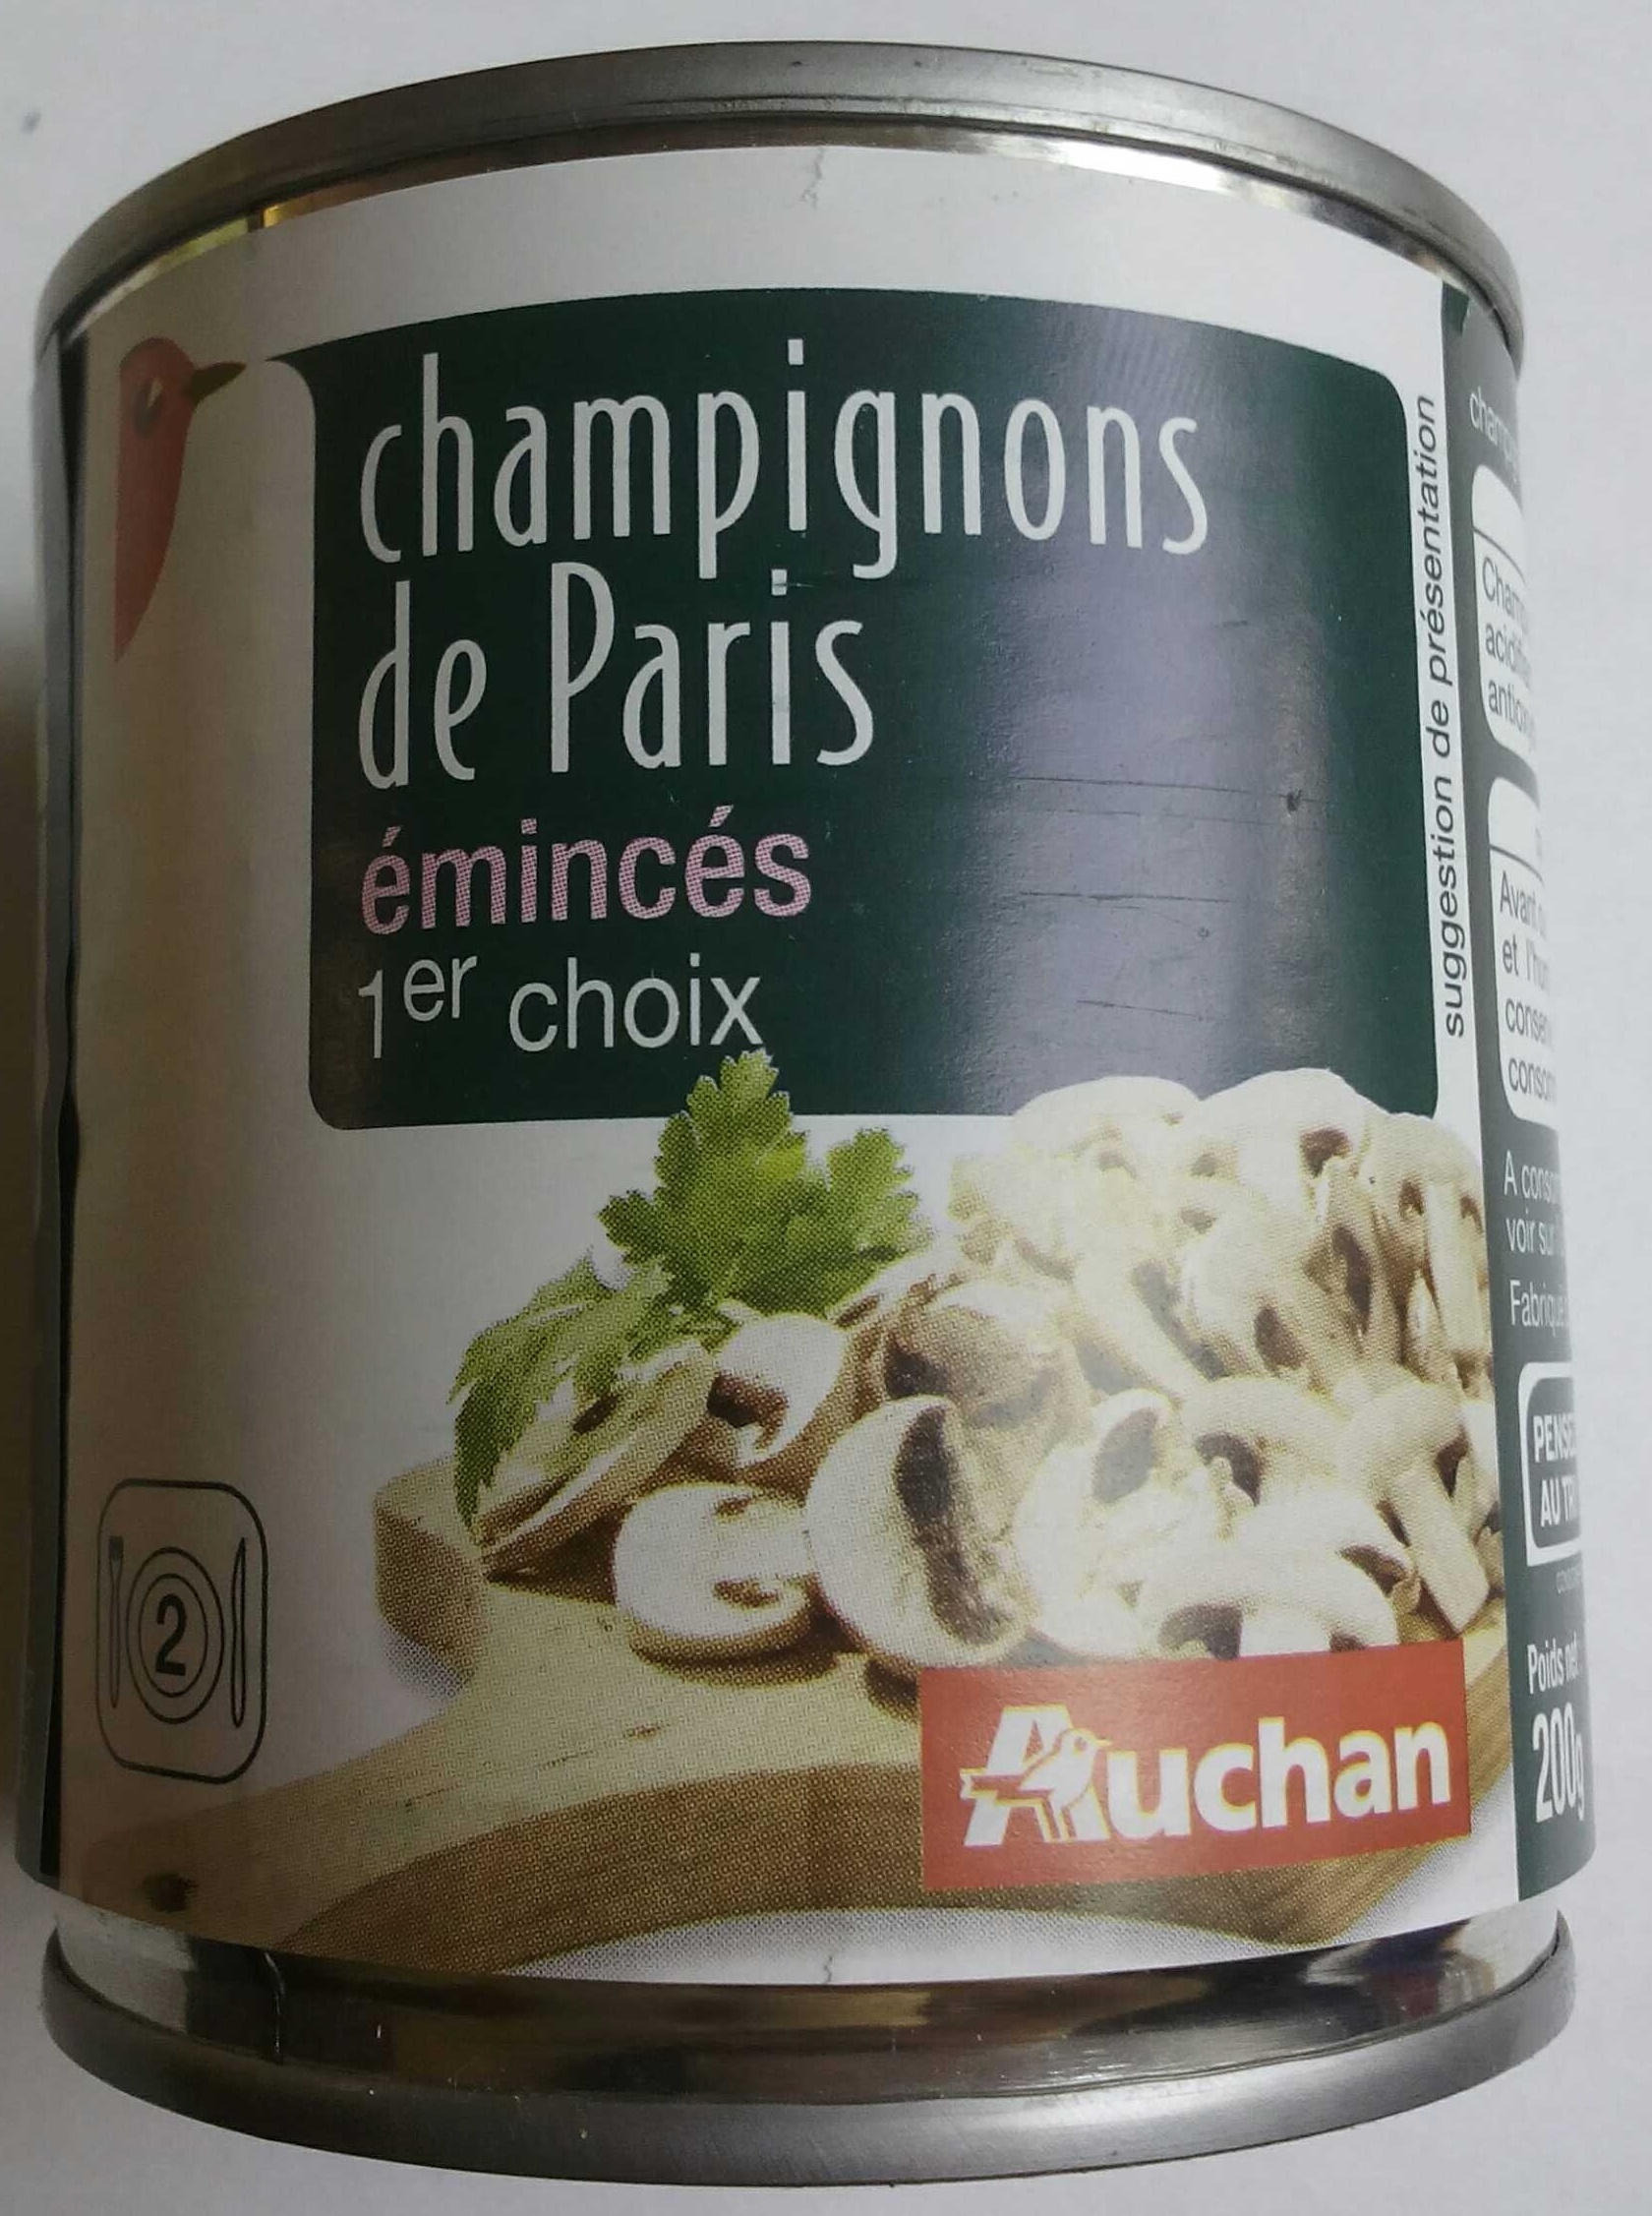 Champignons de Paris émincés 1er choix - Produit